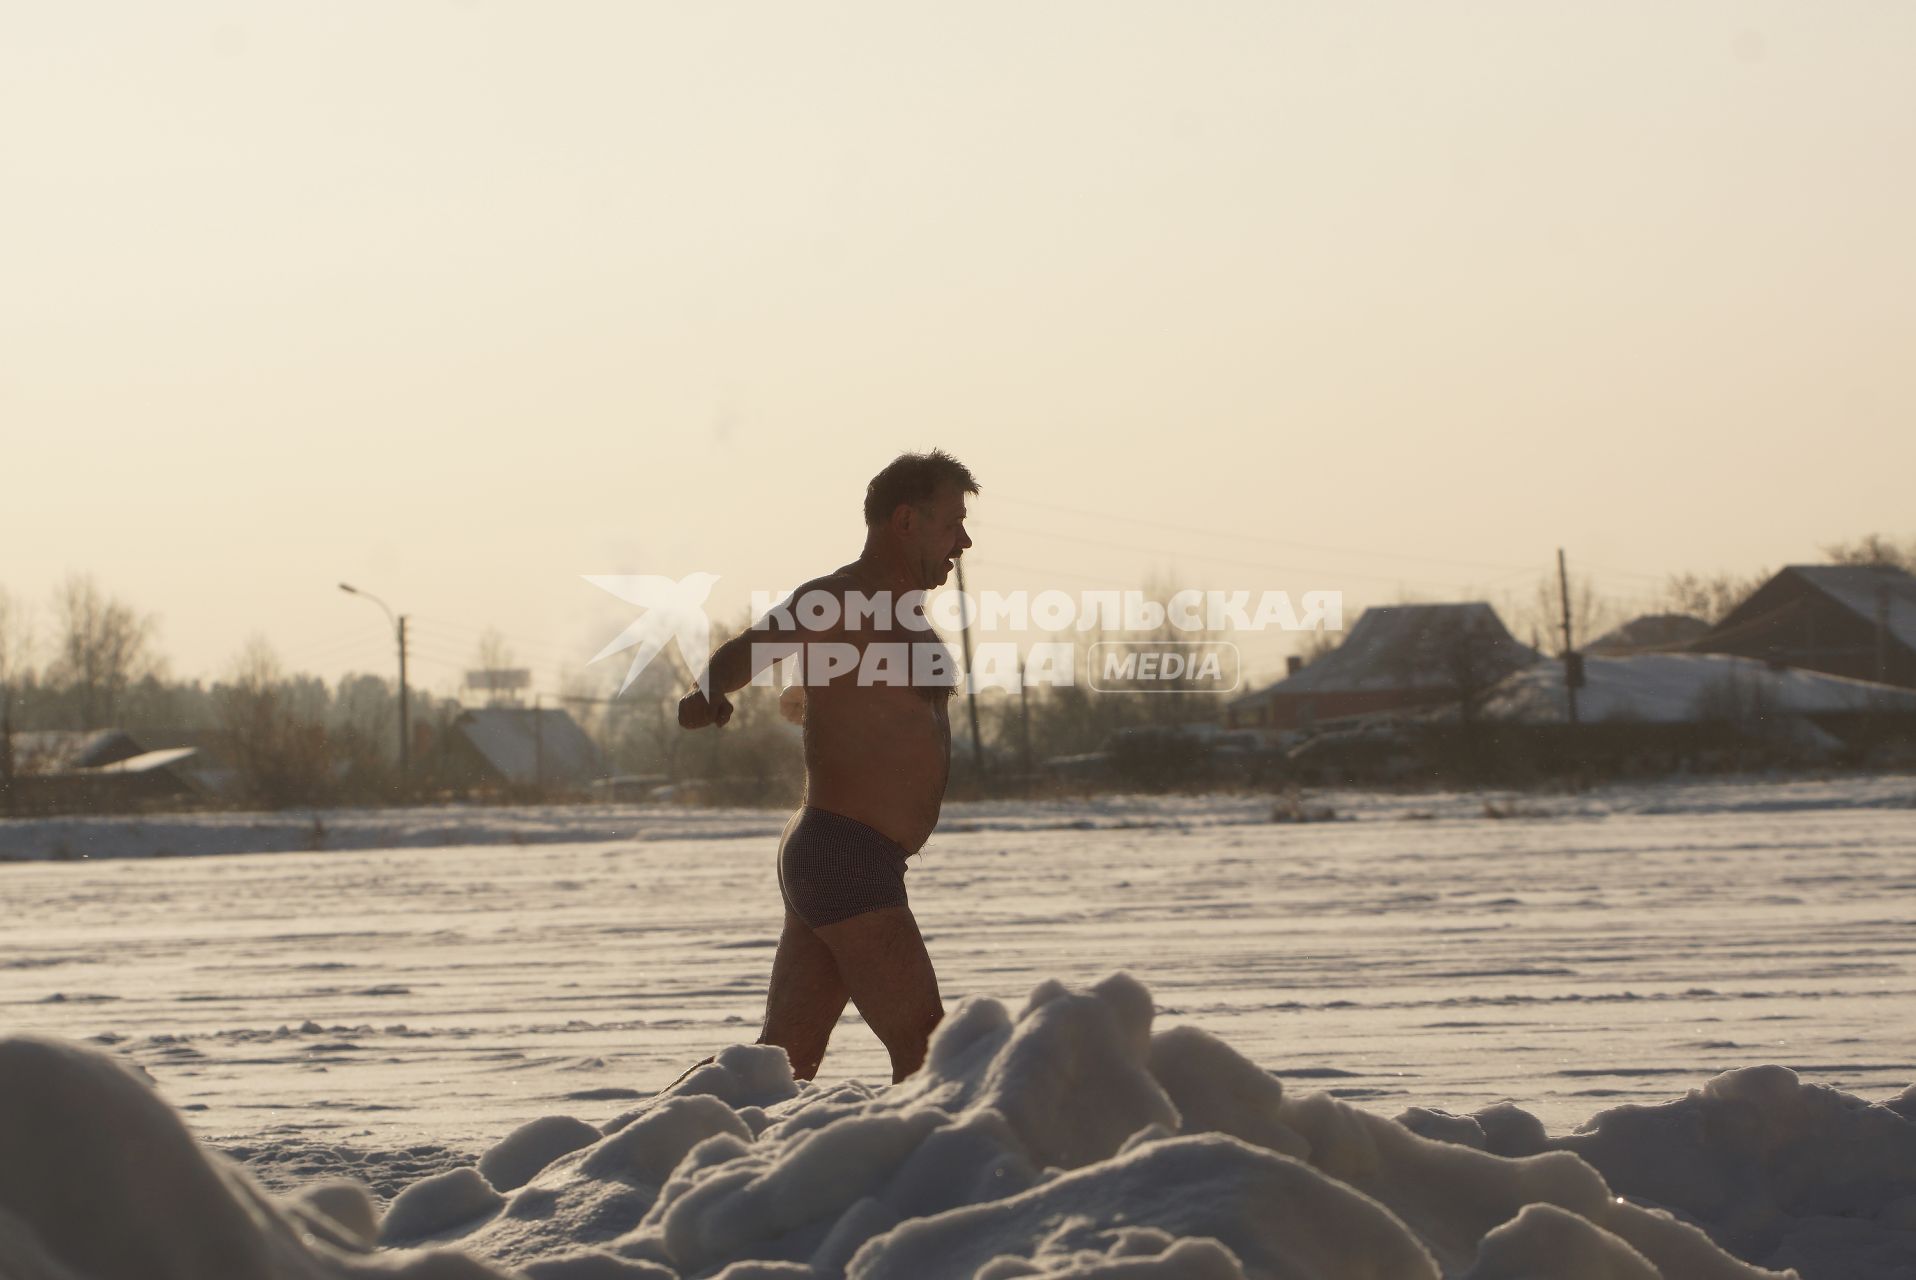 Екатеринбург. Мужчина бегает по снегу после купания в проруби во время крещенских купаний